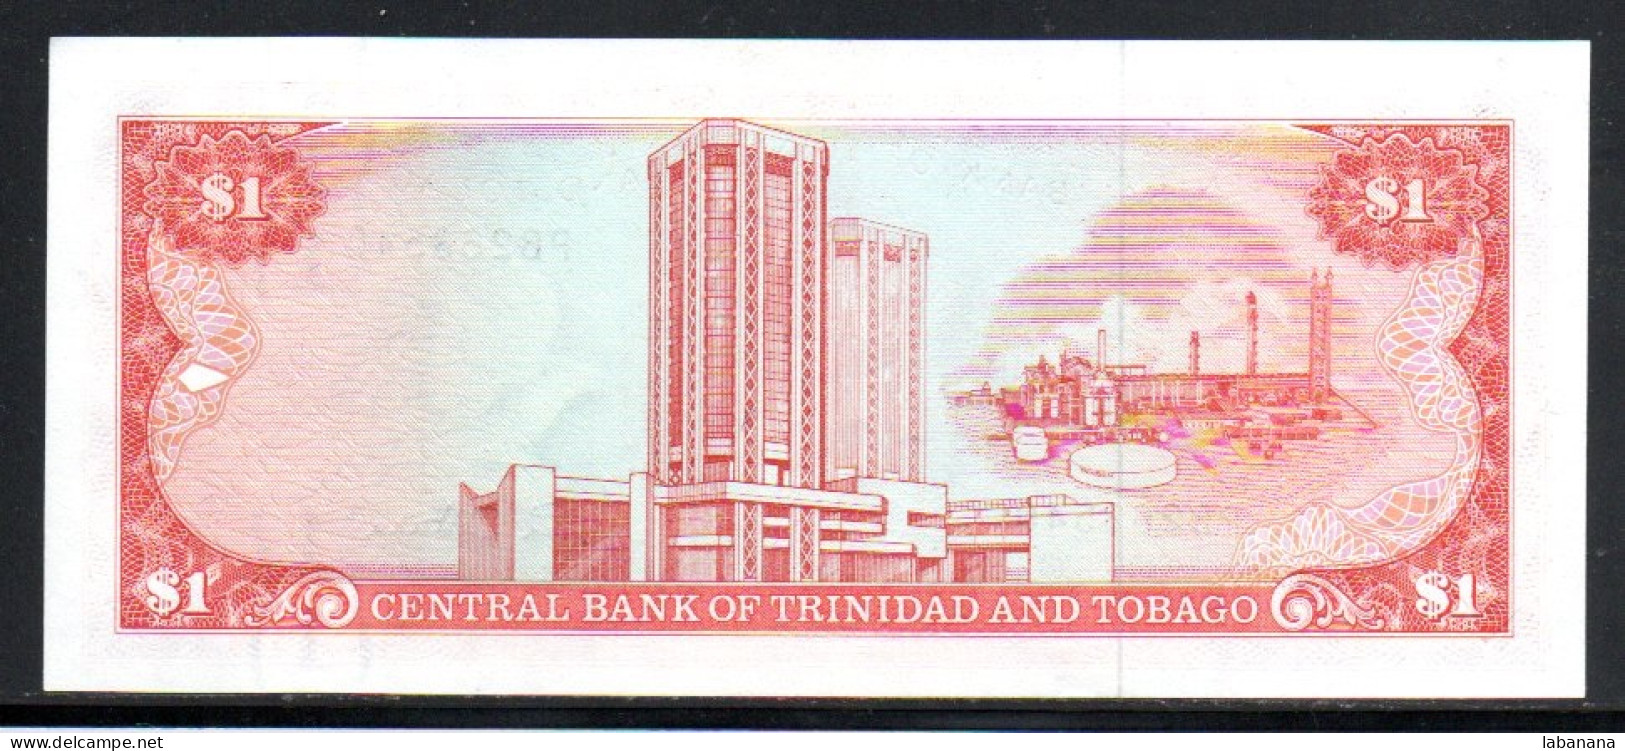 659-Trinidad Et Tobago 1$ 1985 PB263 Sig.7 Neuf/unc - Trinité & Tobago